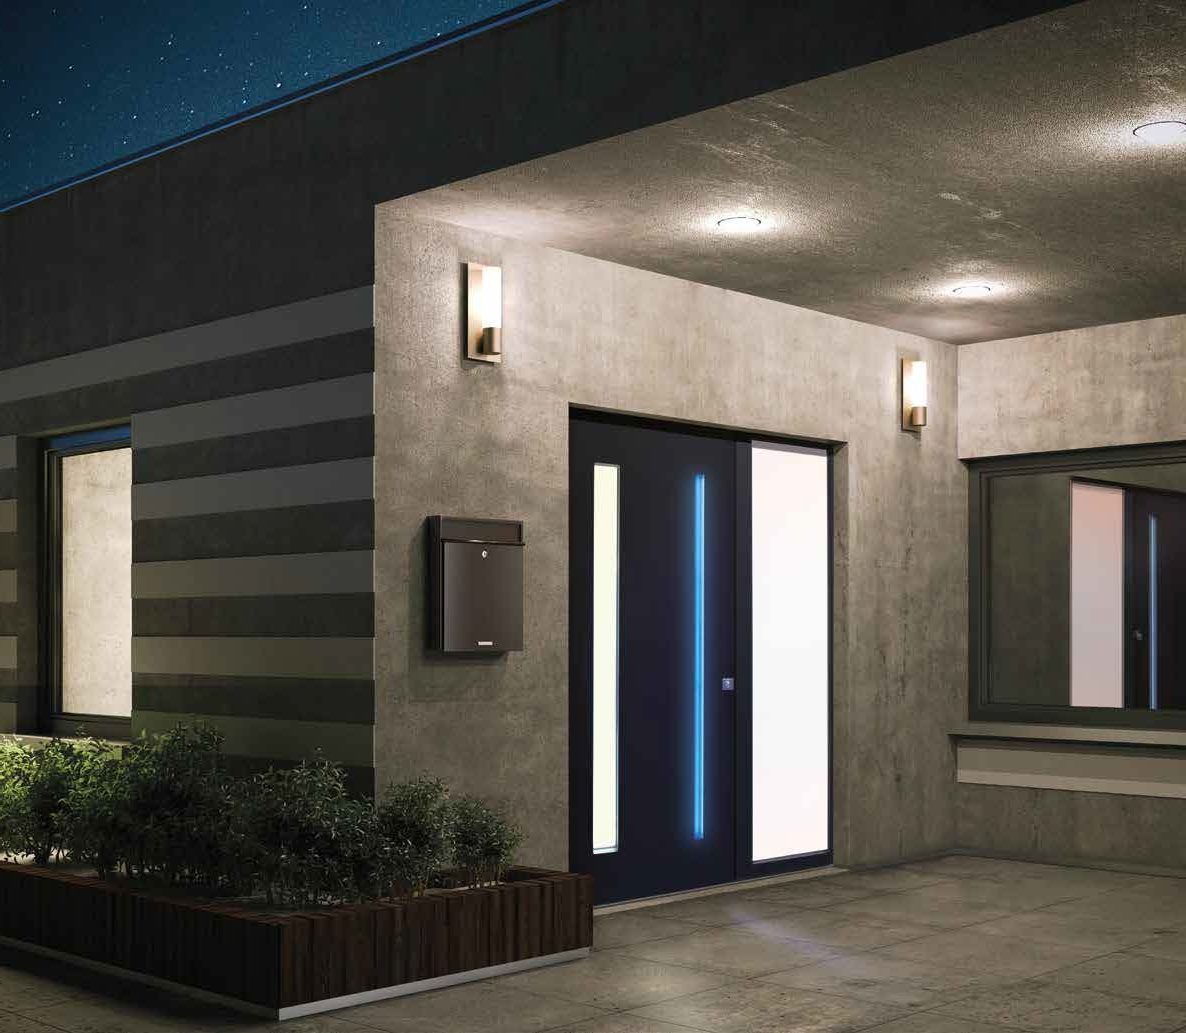 Poignée porte d'entrée inox - Porte d'entrée aluminium classic